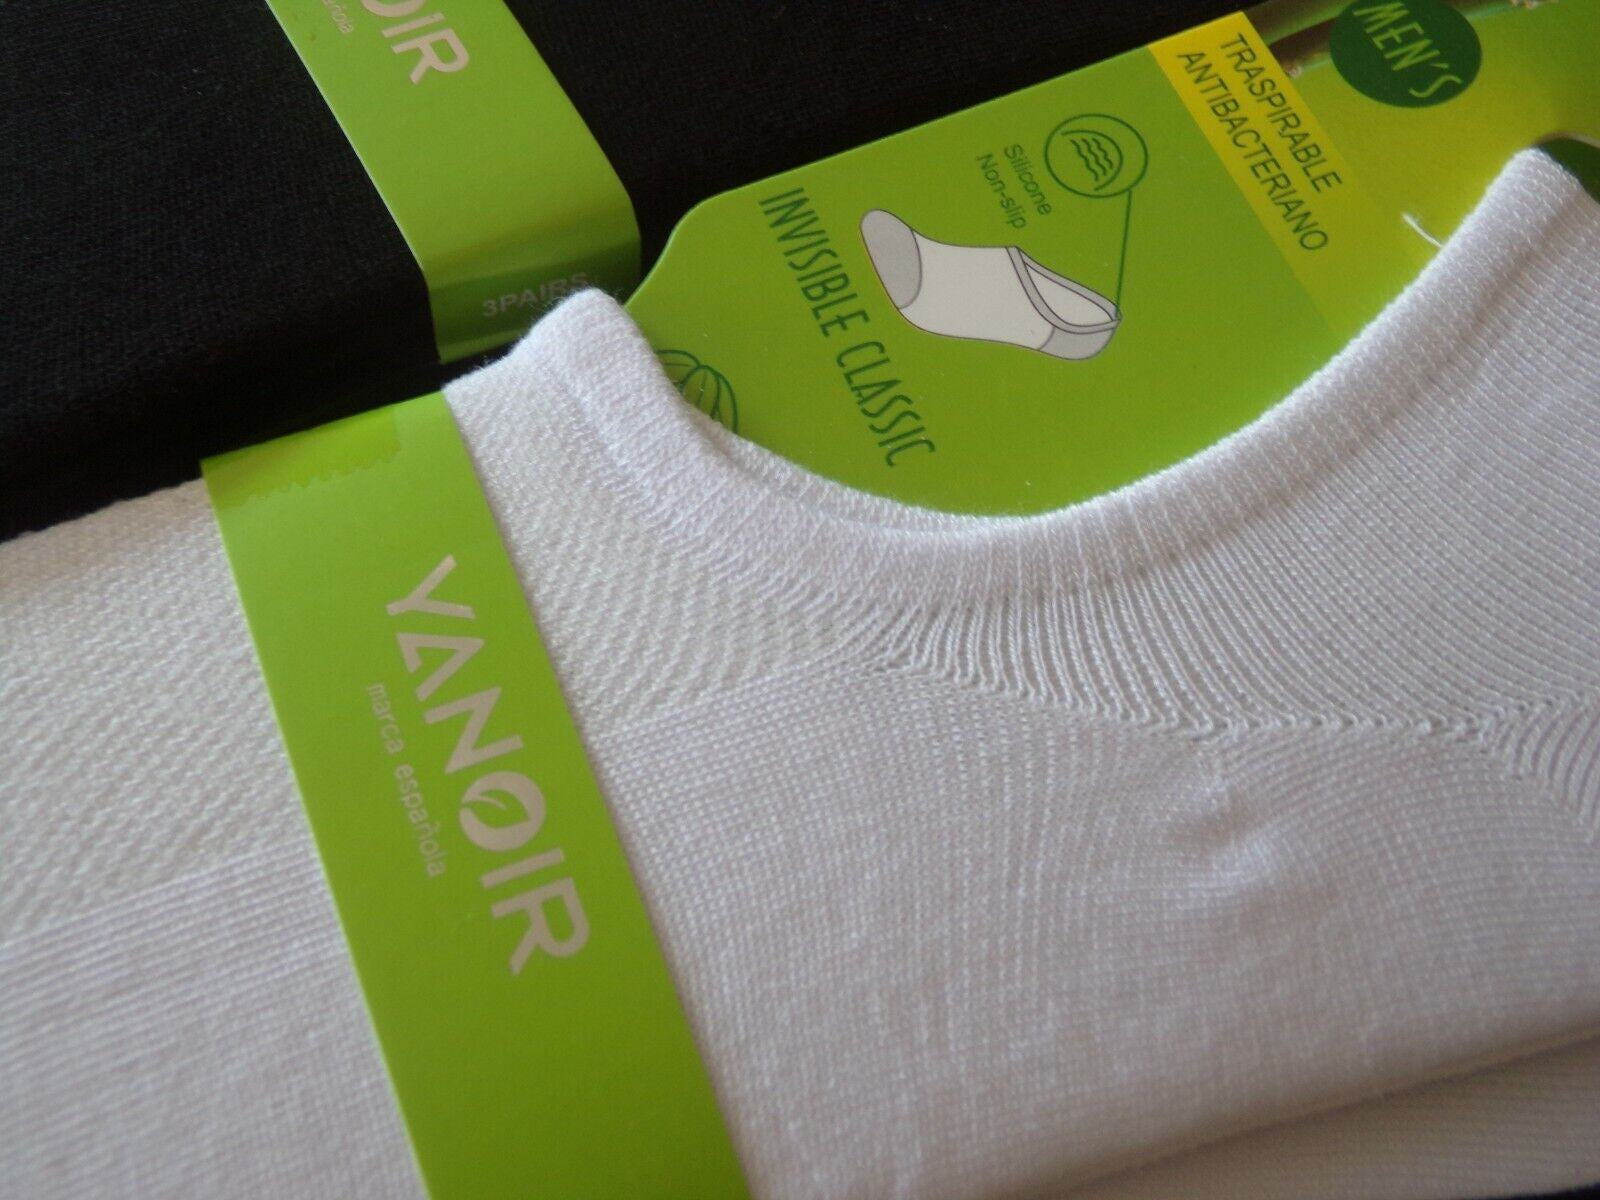 6 pack Bamboe Sneaker Sokken Wit Yanoir